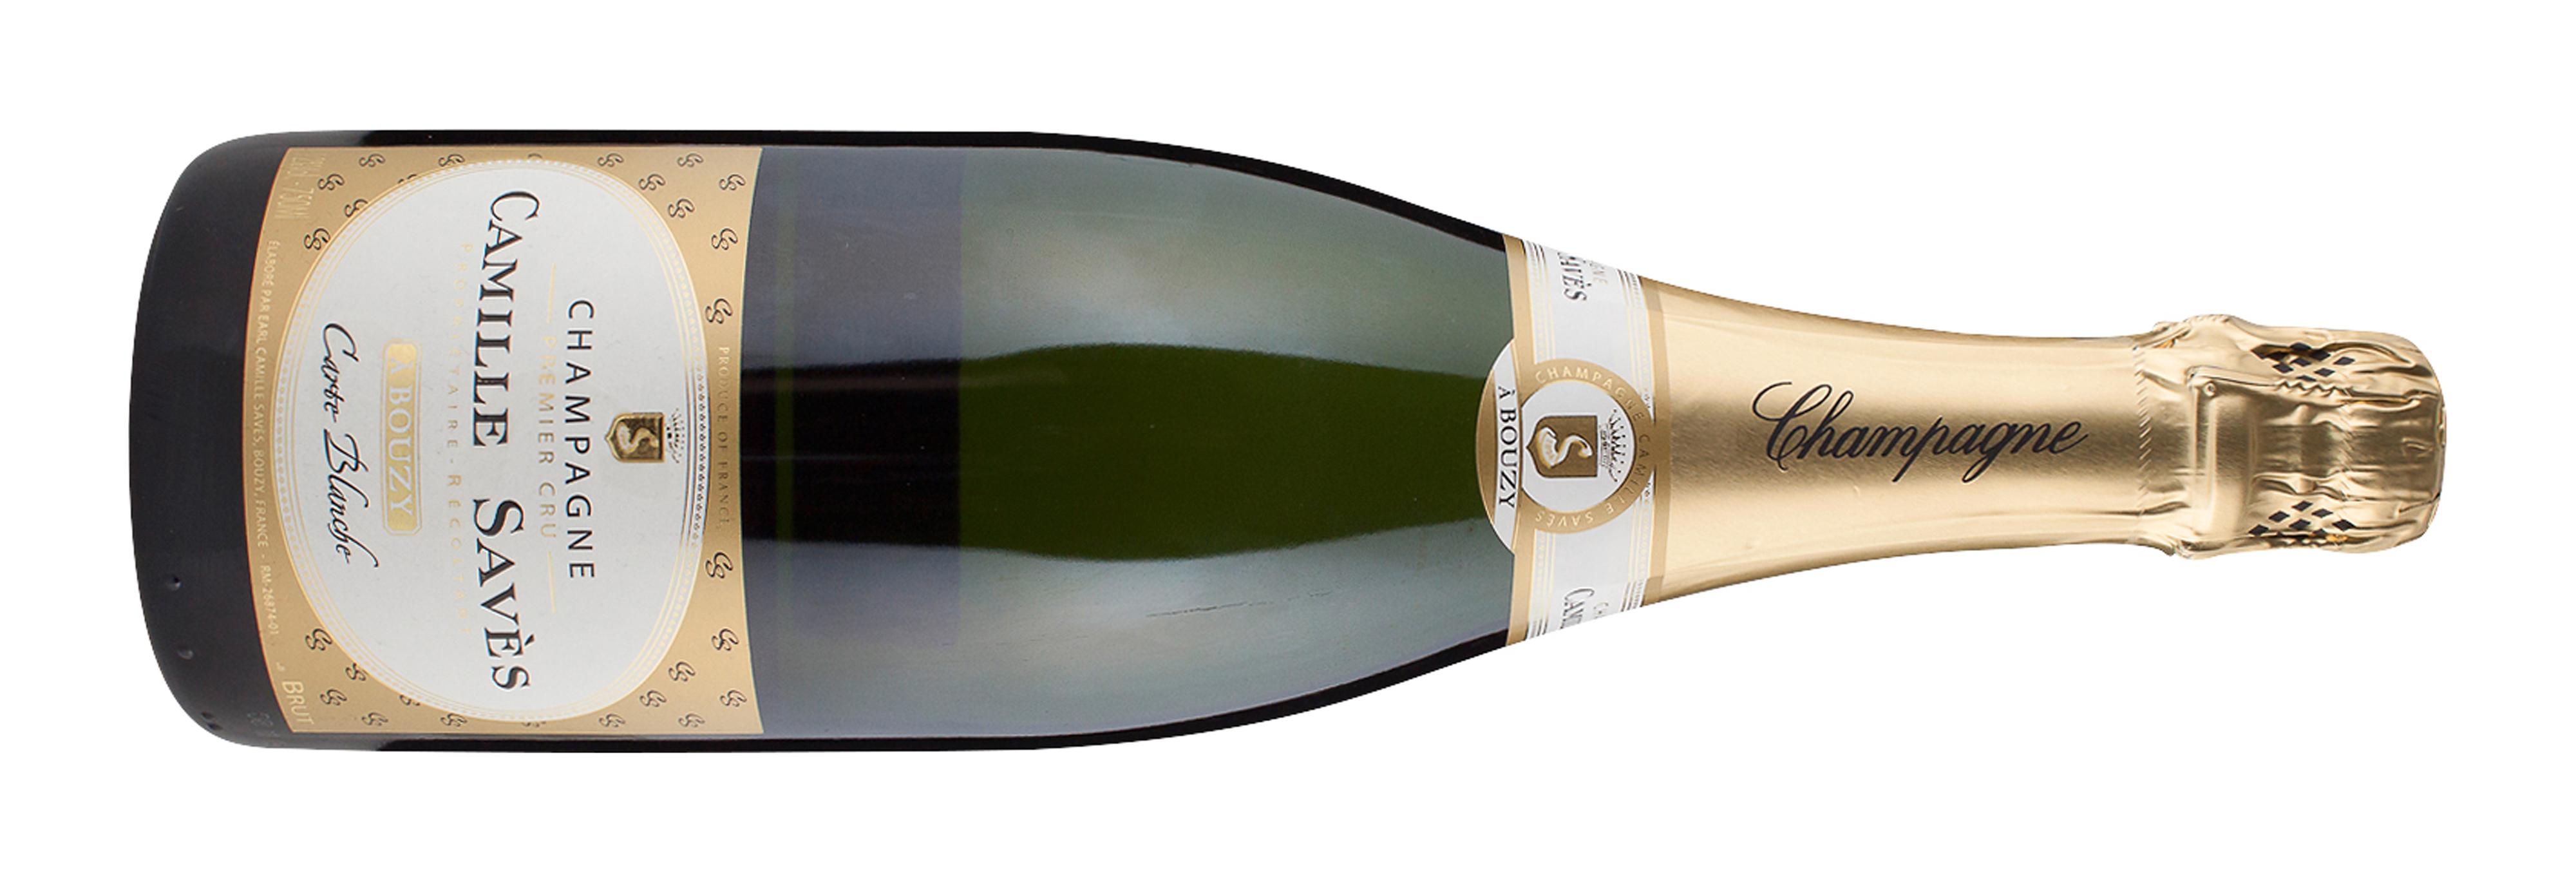 4446301 Bestillingsutvalget/ lokale vinmonopol, Poeng: 88, Land/region: Frankrike, Champagne, Druesort: Pinot Noir 75%, Chardonnay 25%